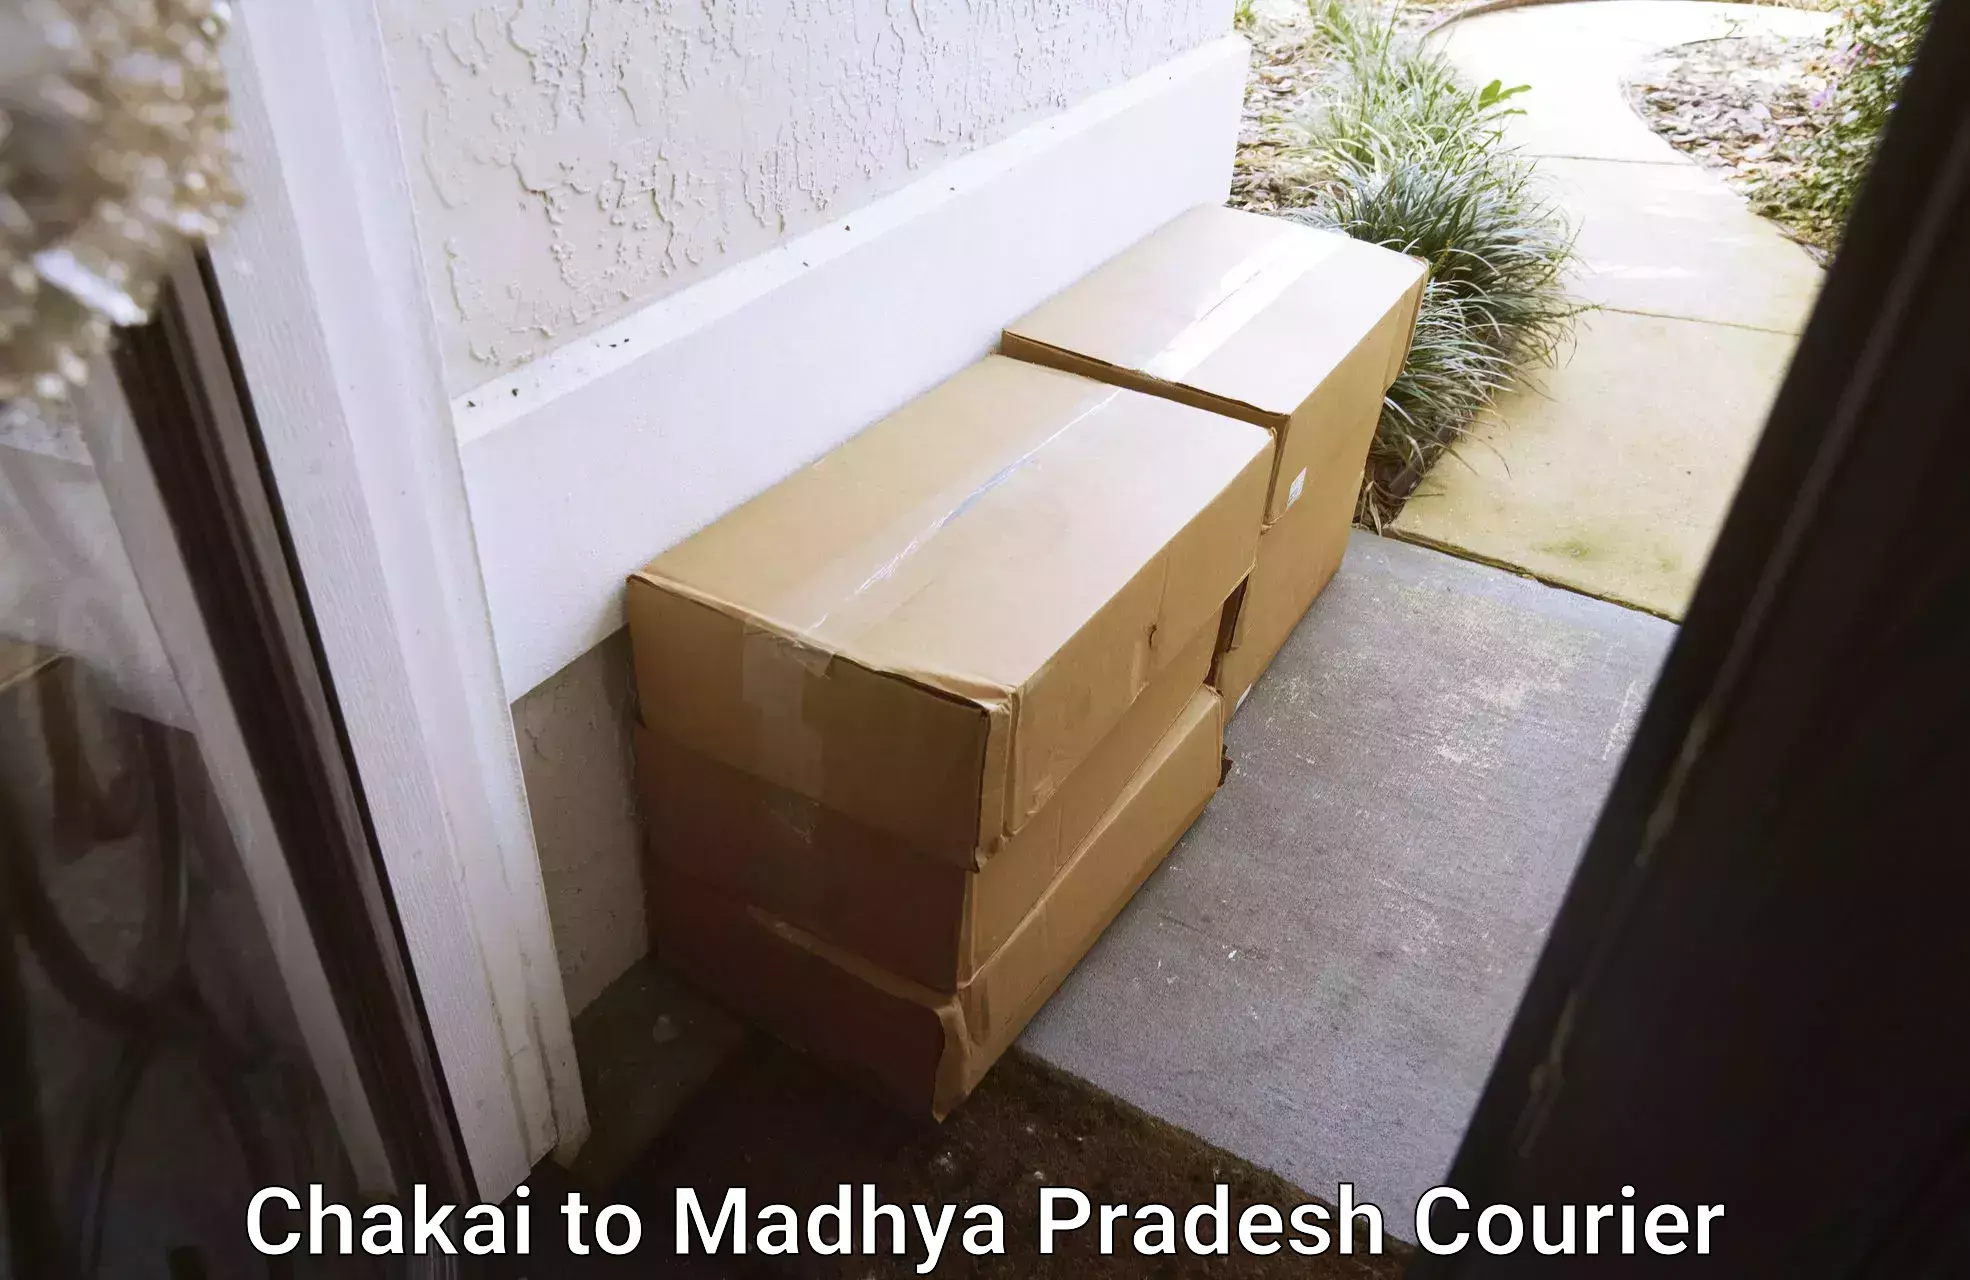 Furniture moving experts Chakai to Madhya Pradesh